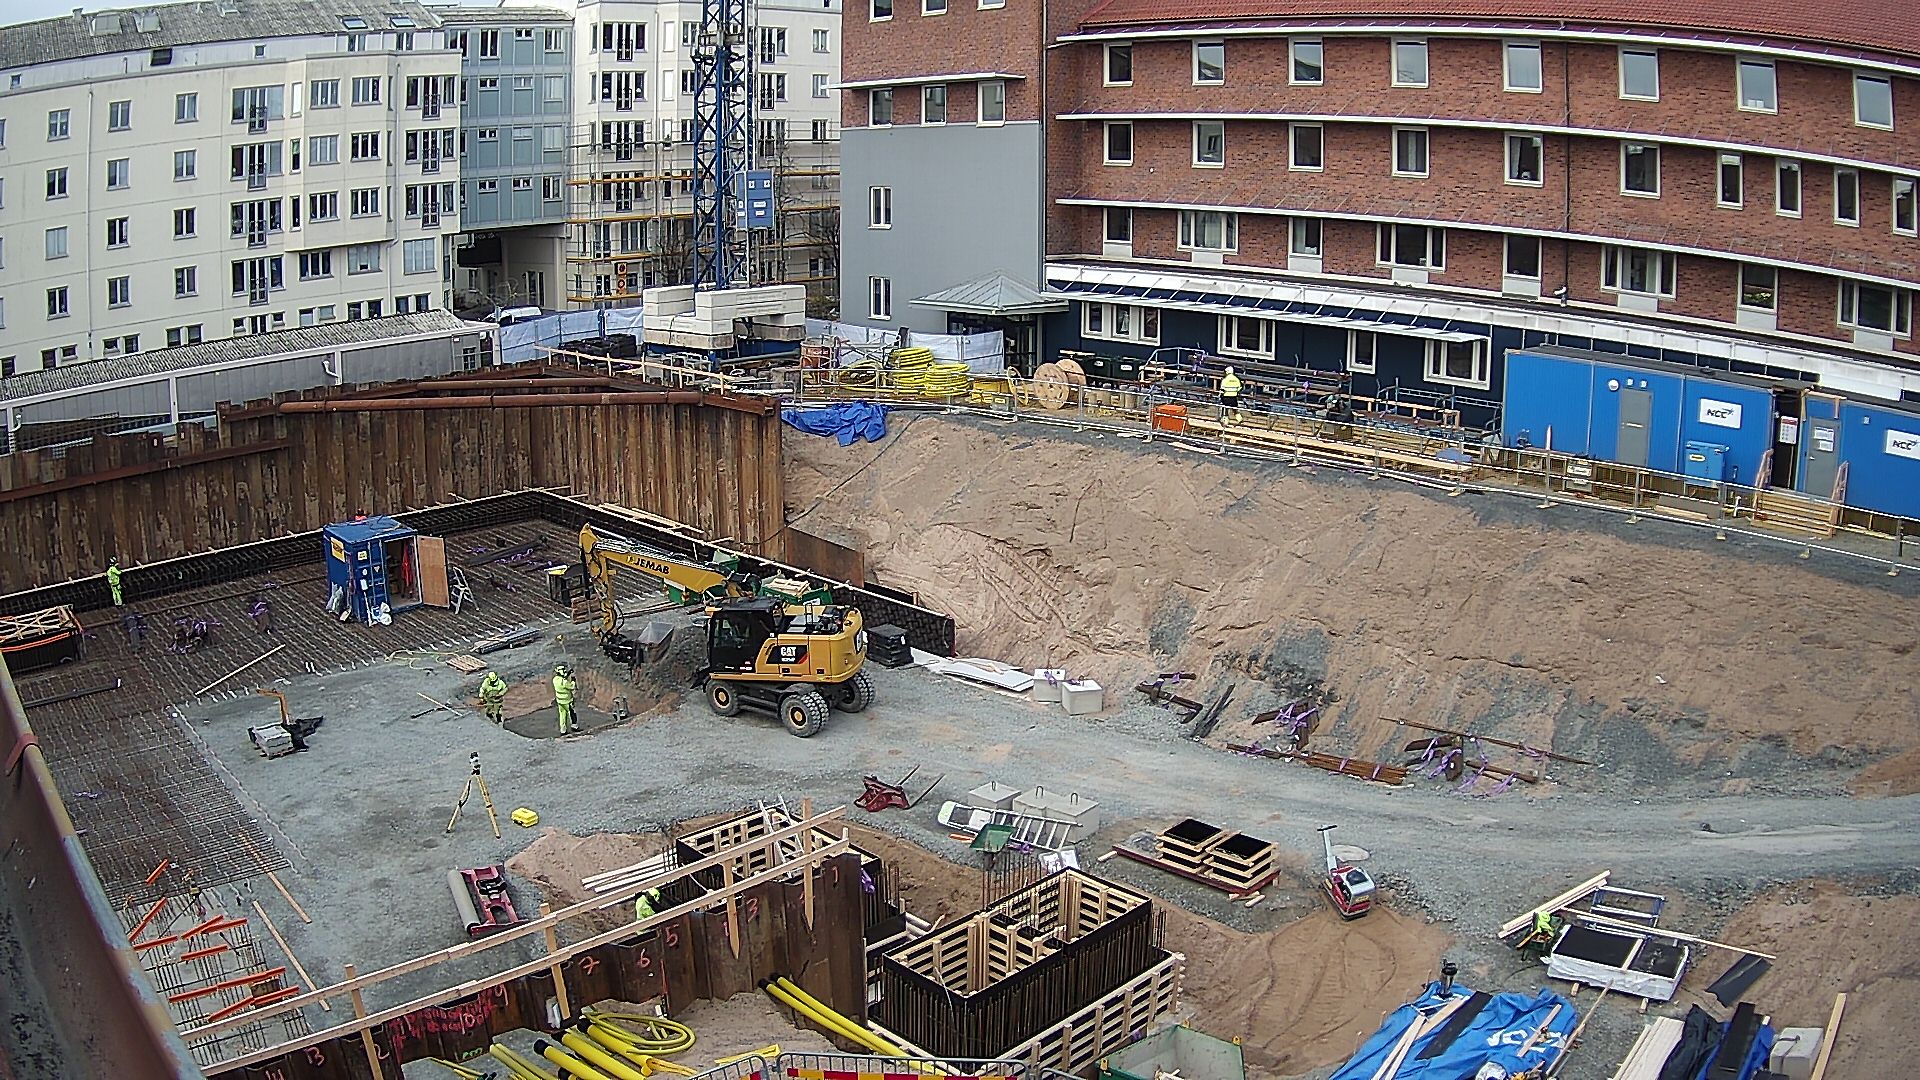 Byggarbetsplatsen sett från hus 01 med nuvarande Science Park House i bakgrunden. En gul grävmaskin är på plats och arbetare är på plats och jobbar.